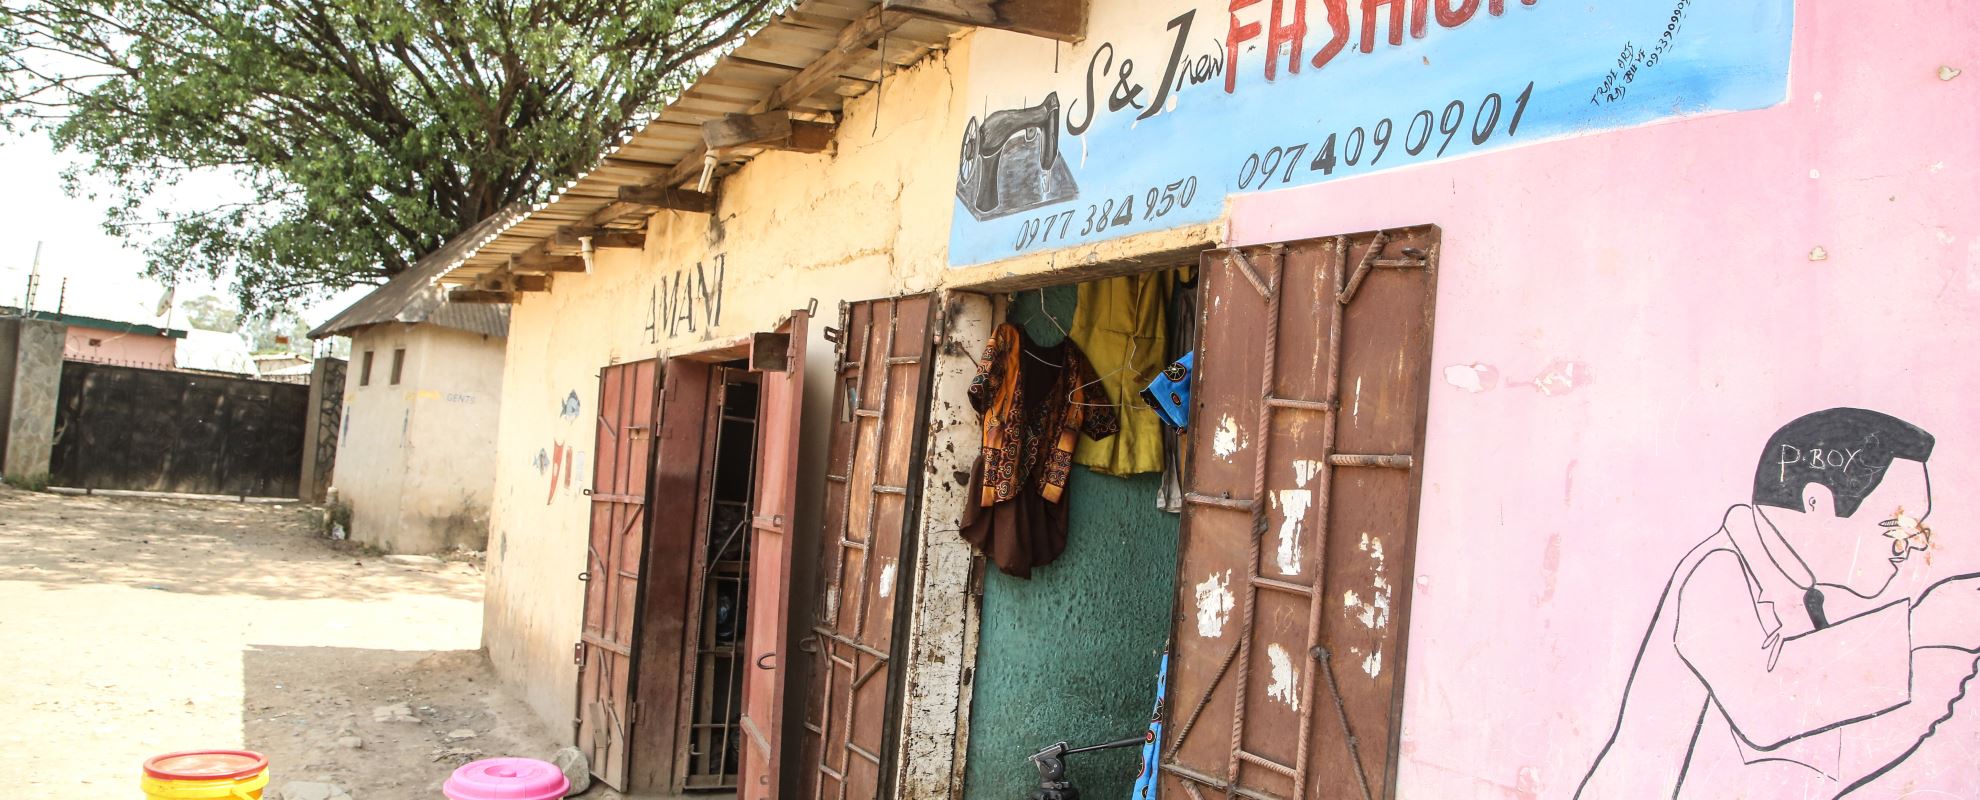 Thandis butikk, S&J New Fashions, i Chaisa i utkanten av Lusaka. Foto: Tom Maruko